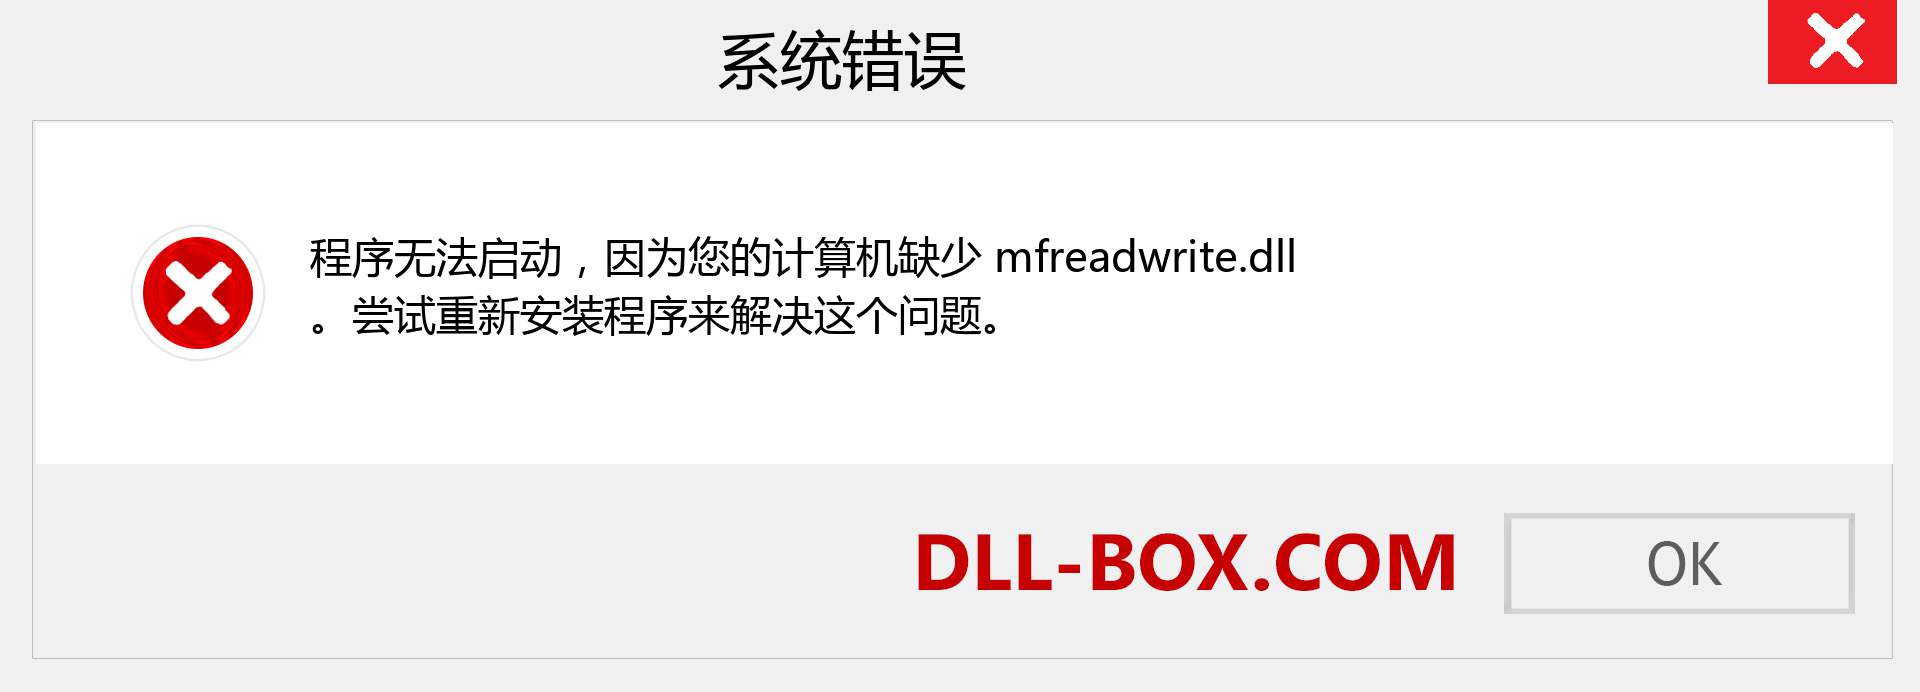 mfreadwrite.dll 文件丢失？。 适用于 Windows 7、8、10 的下载 - 修复 Windows、照片、图像上的 mfreadwrite dll 丢失错误